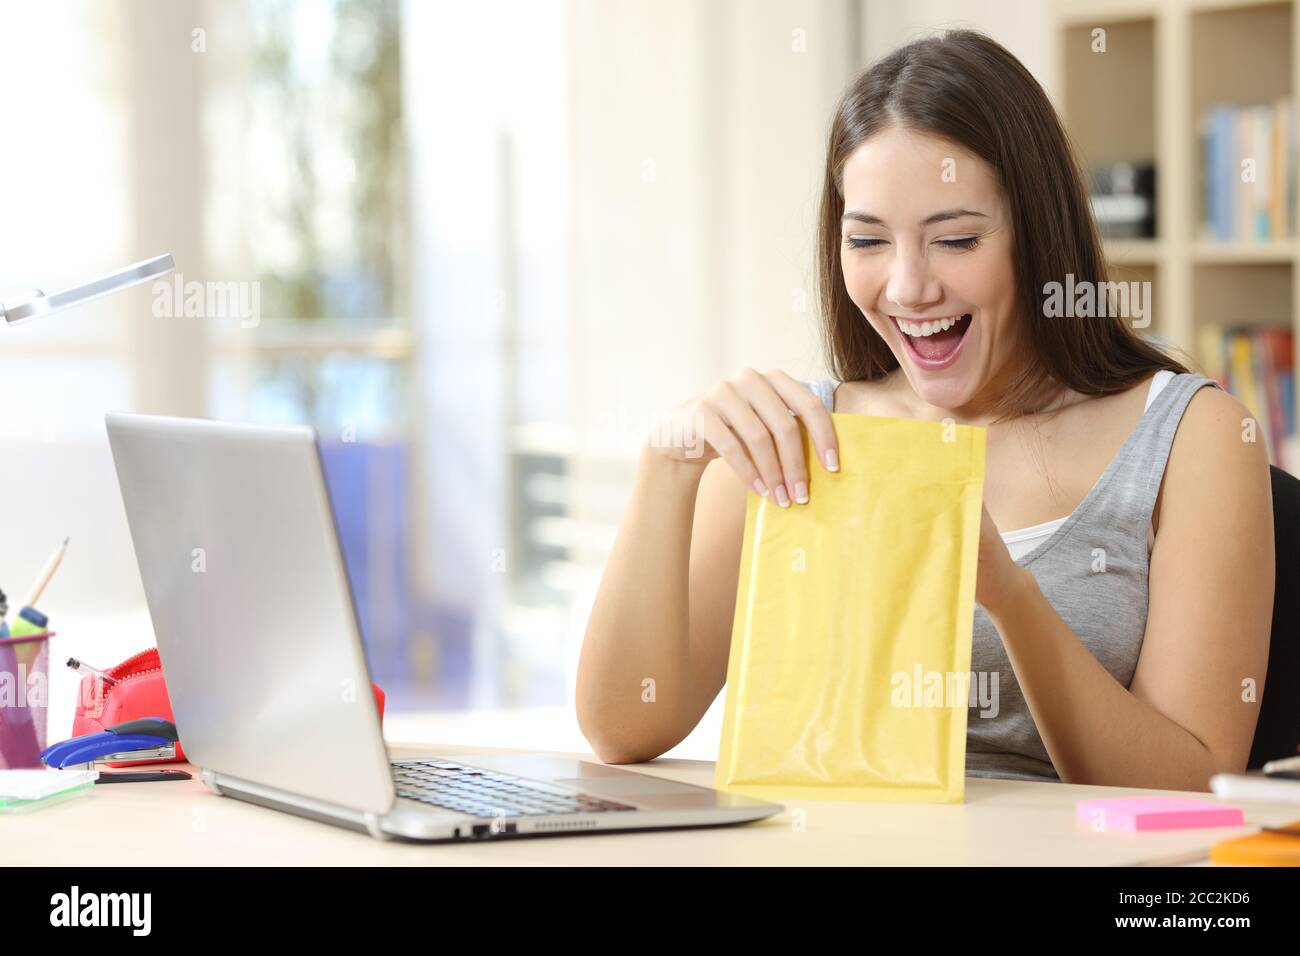 Une étudiante excitée ouvre et regarde à l'intérieur d'une enveloppe rembourrée assis sur un bureau à la maison Banque D'Images